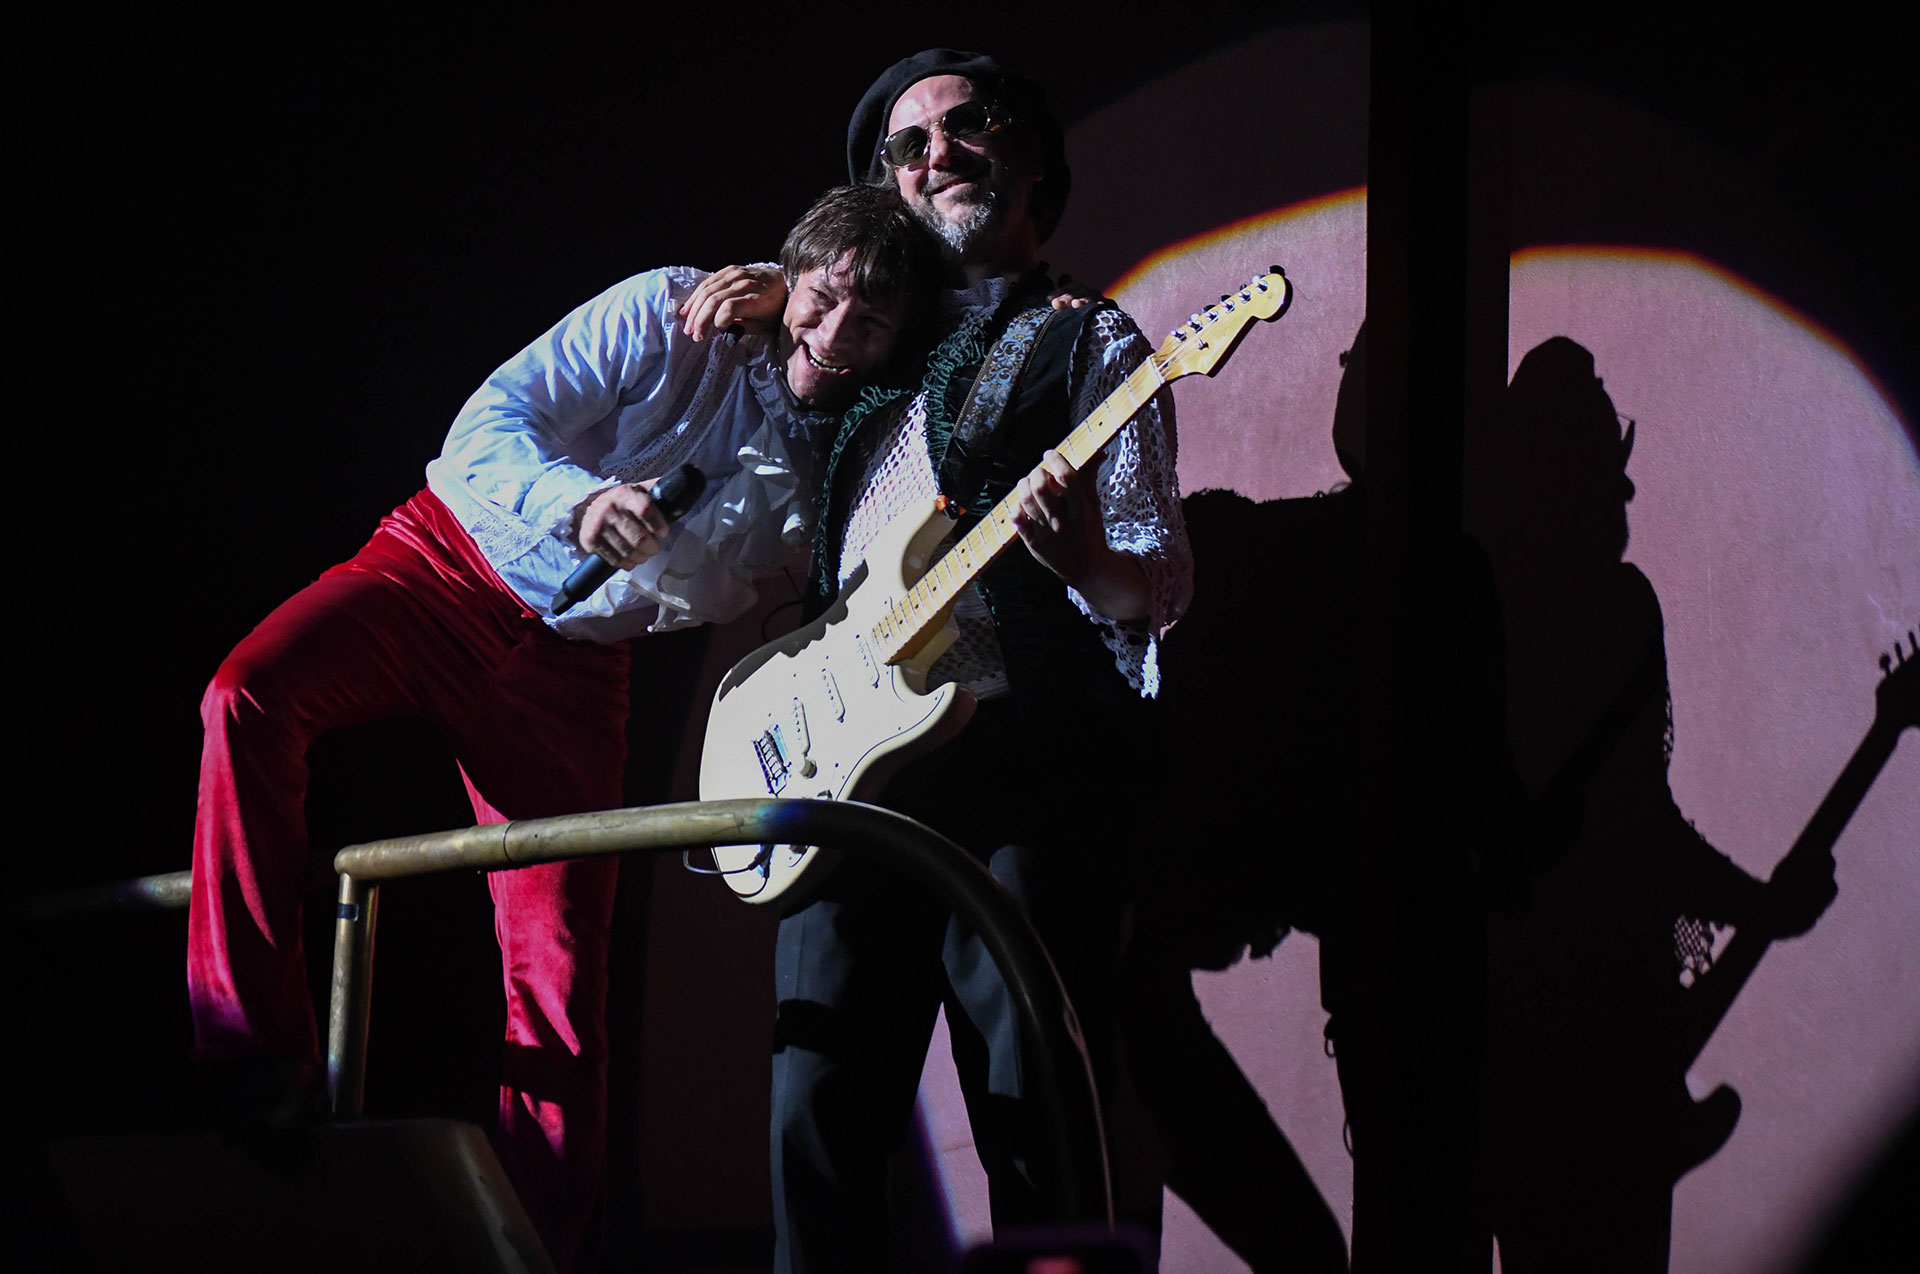 Con Joaquín Levinton como partener, la banda porteña se presentó en el mítico Teatro Gran Rex dando muestra de los nuevos sonidos que conforman su sexto disco de estudio. Rock, nostalgia y muestras inagotables de talento, en una noche inolvidable.